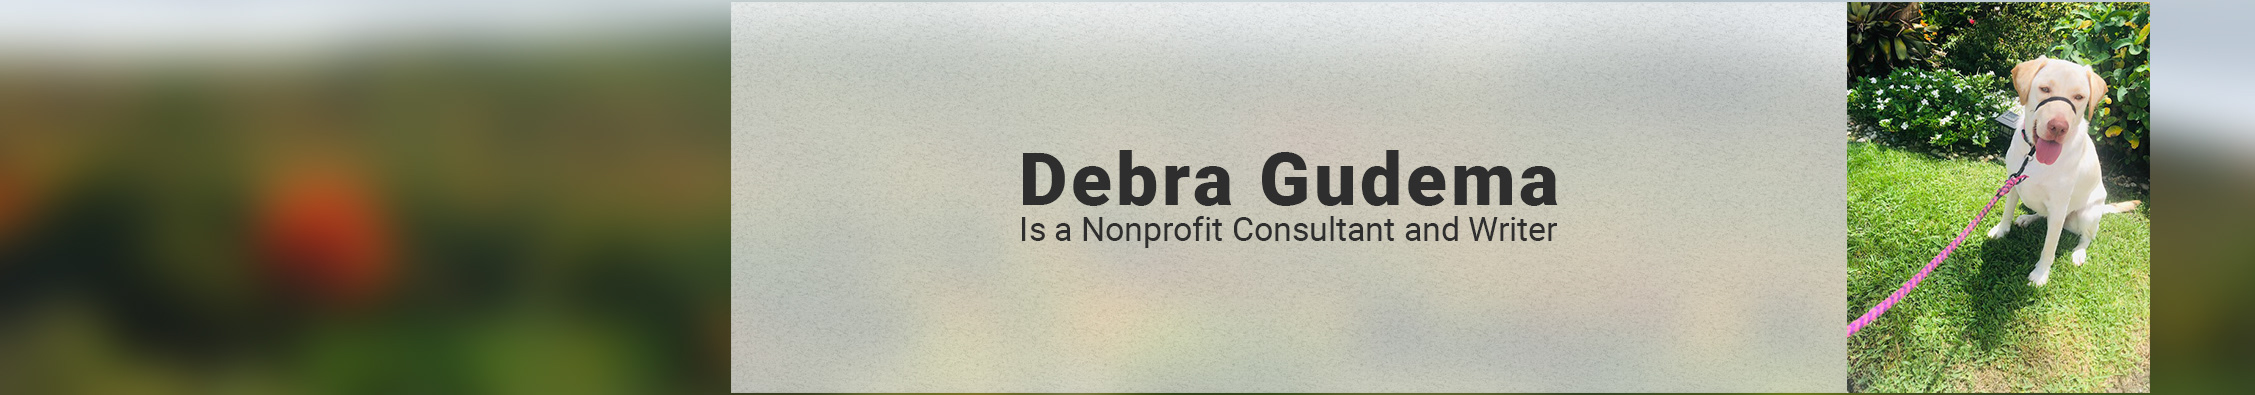 Debra Gudema's profile banner